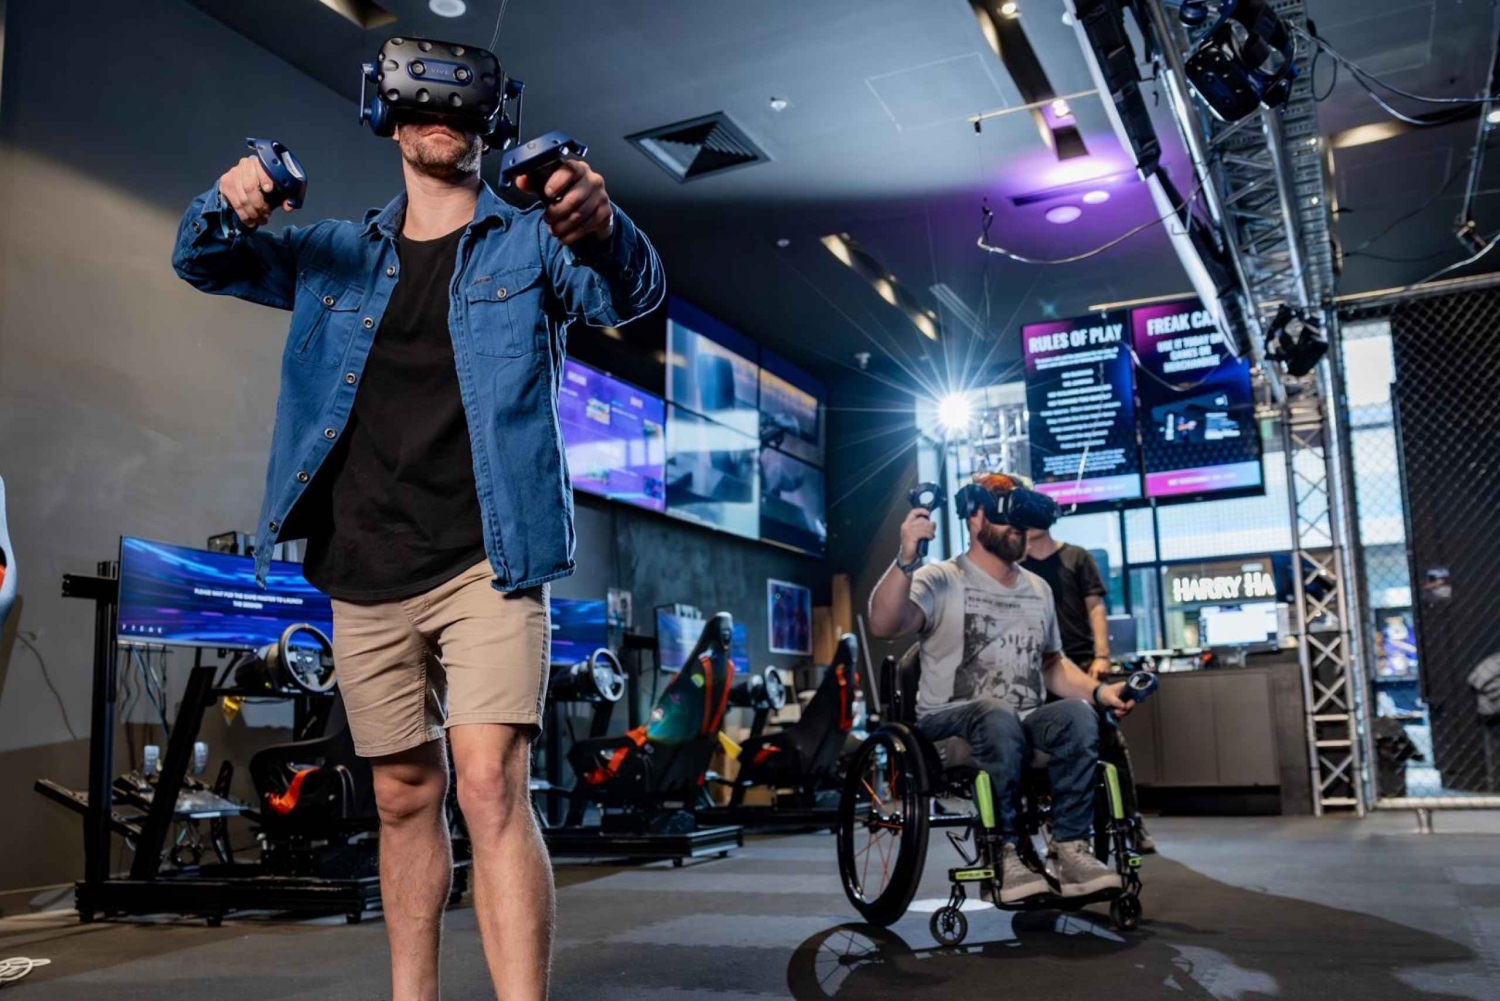 Macquarie Centre: 1 ora di esperienza di realtà virtuale in sala giochi